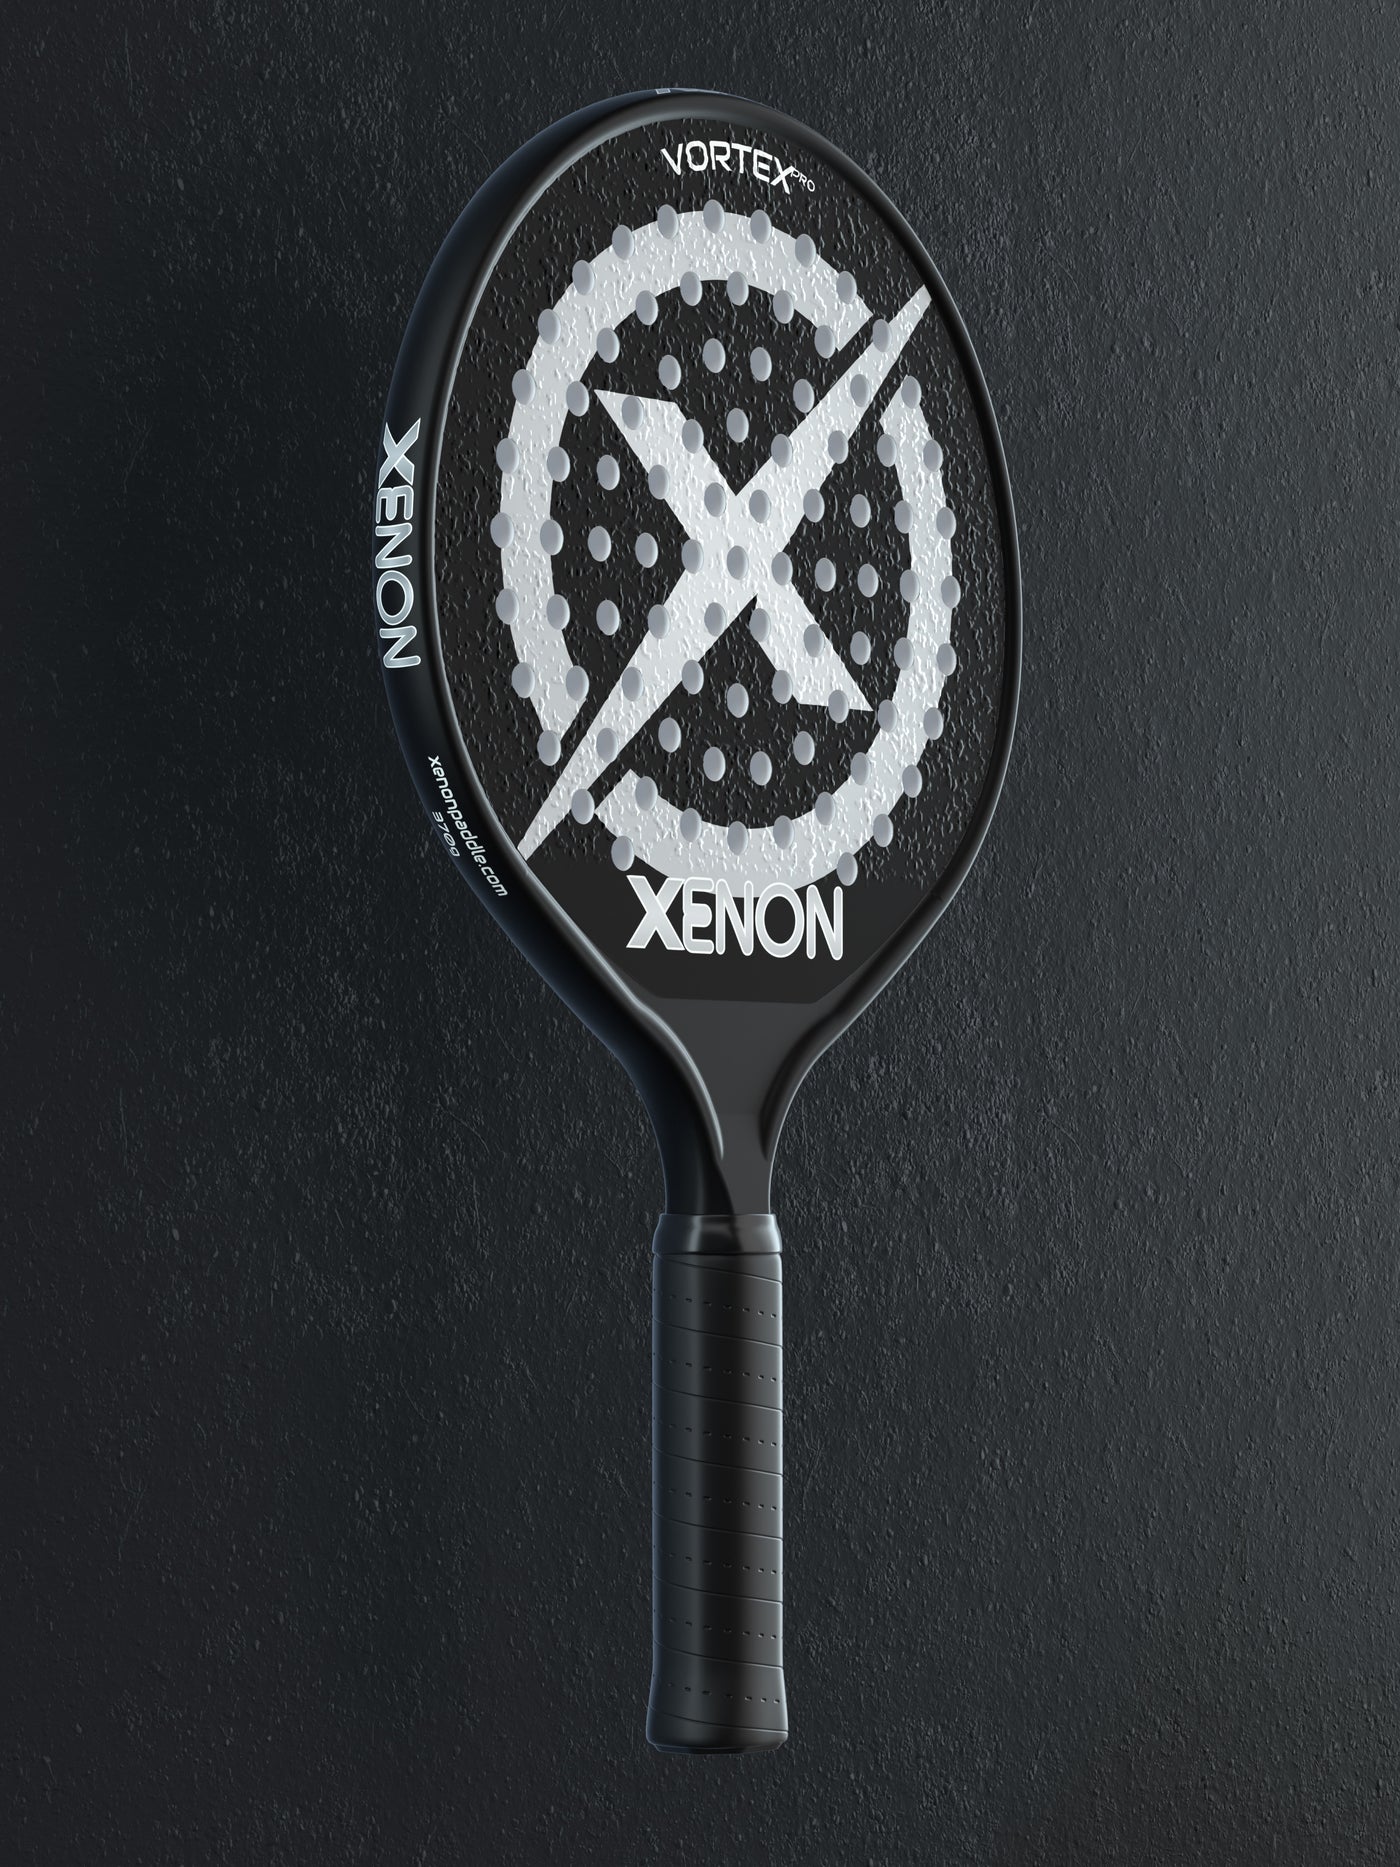 Xenon Paddle Vortex Pro Tennis video demo